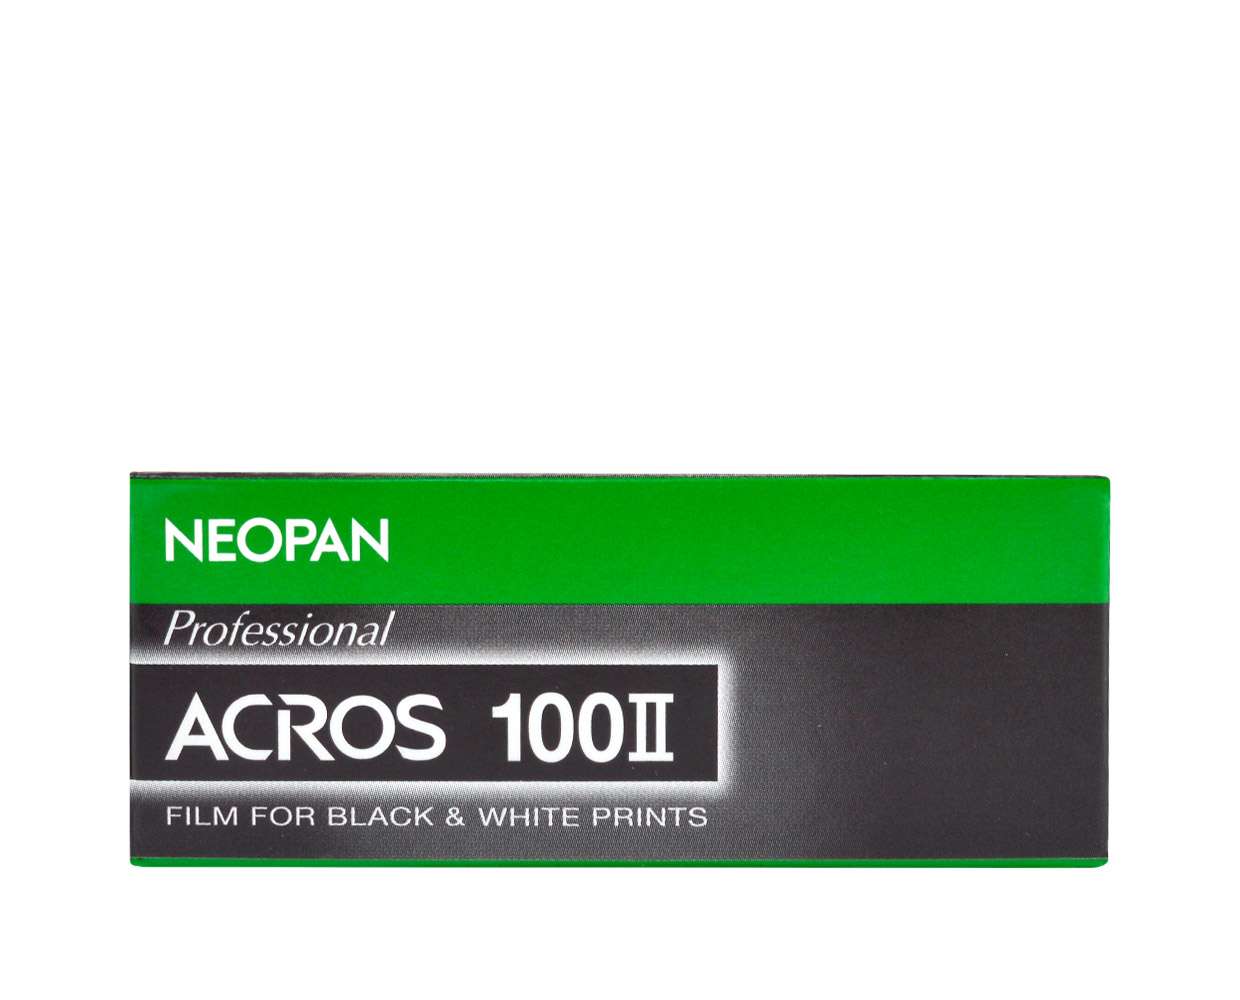 Fuji Neopan Acros 100 II roll film 120